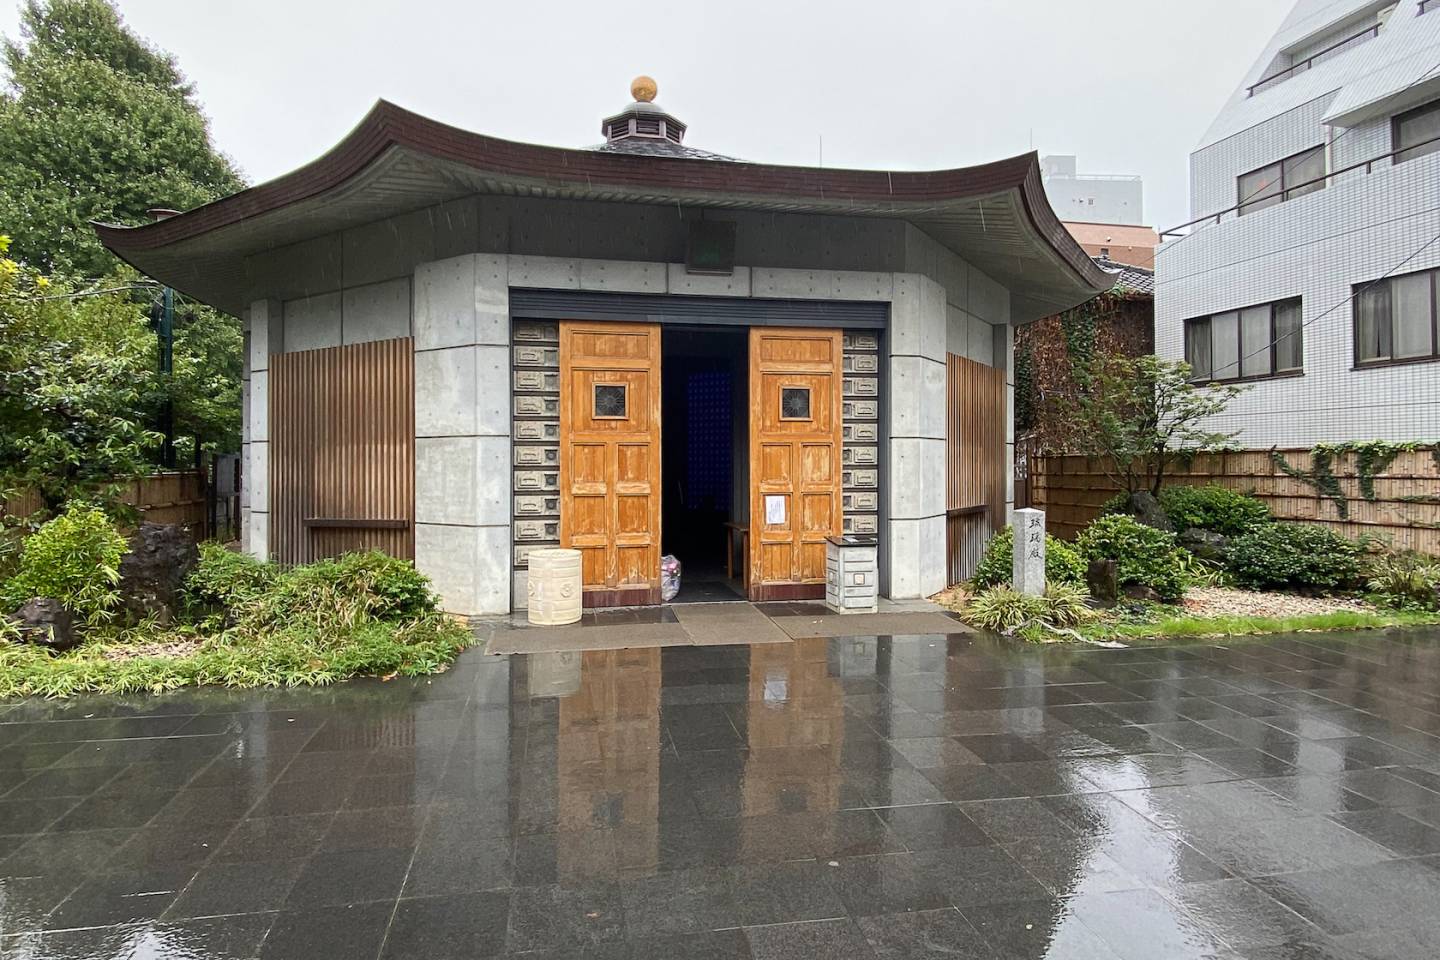 Rechteckige buddhistische Halle am Tempel Kōkoku-ji, regennasser Asphalt